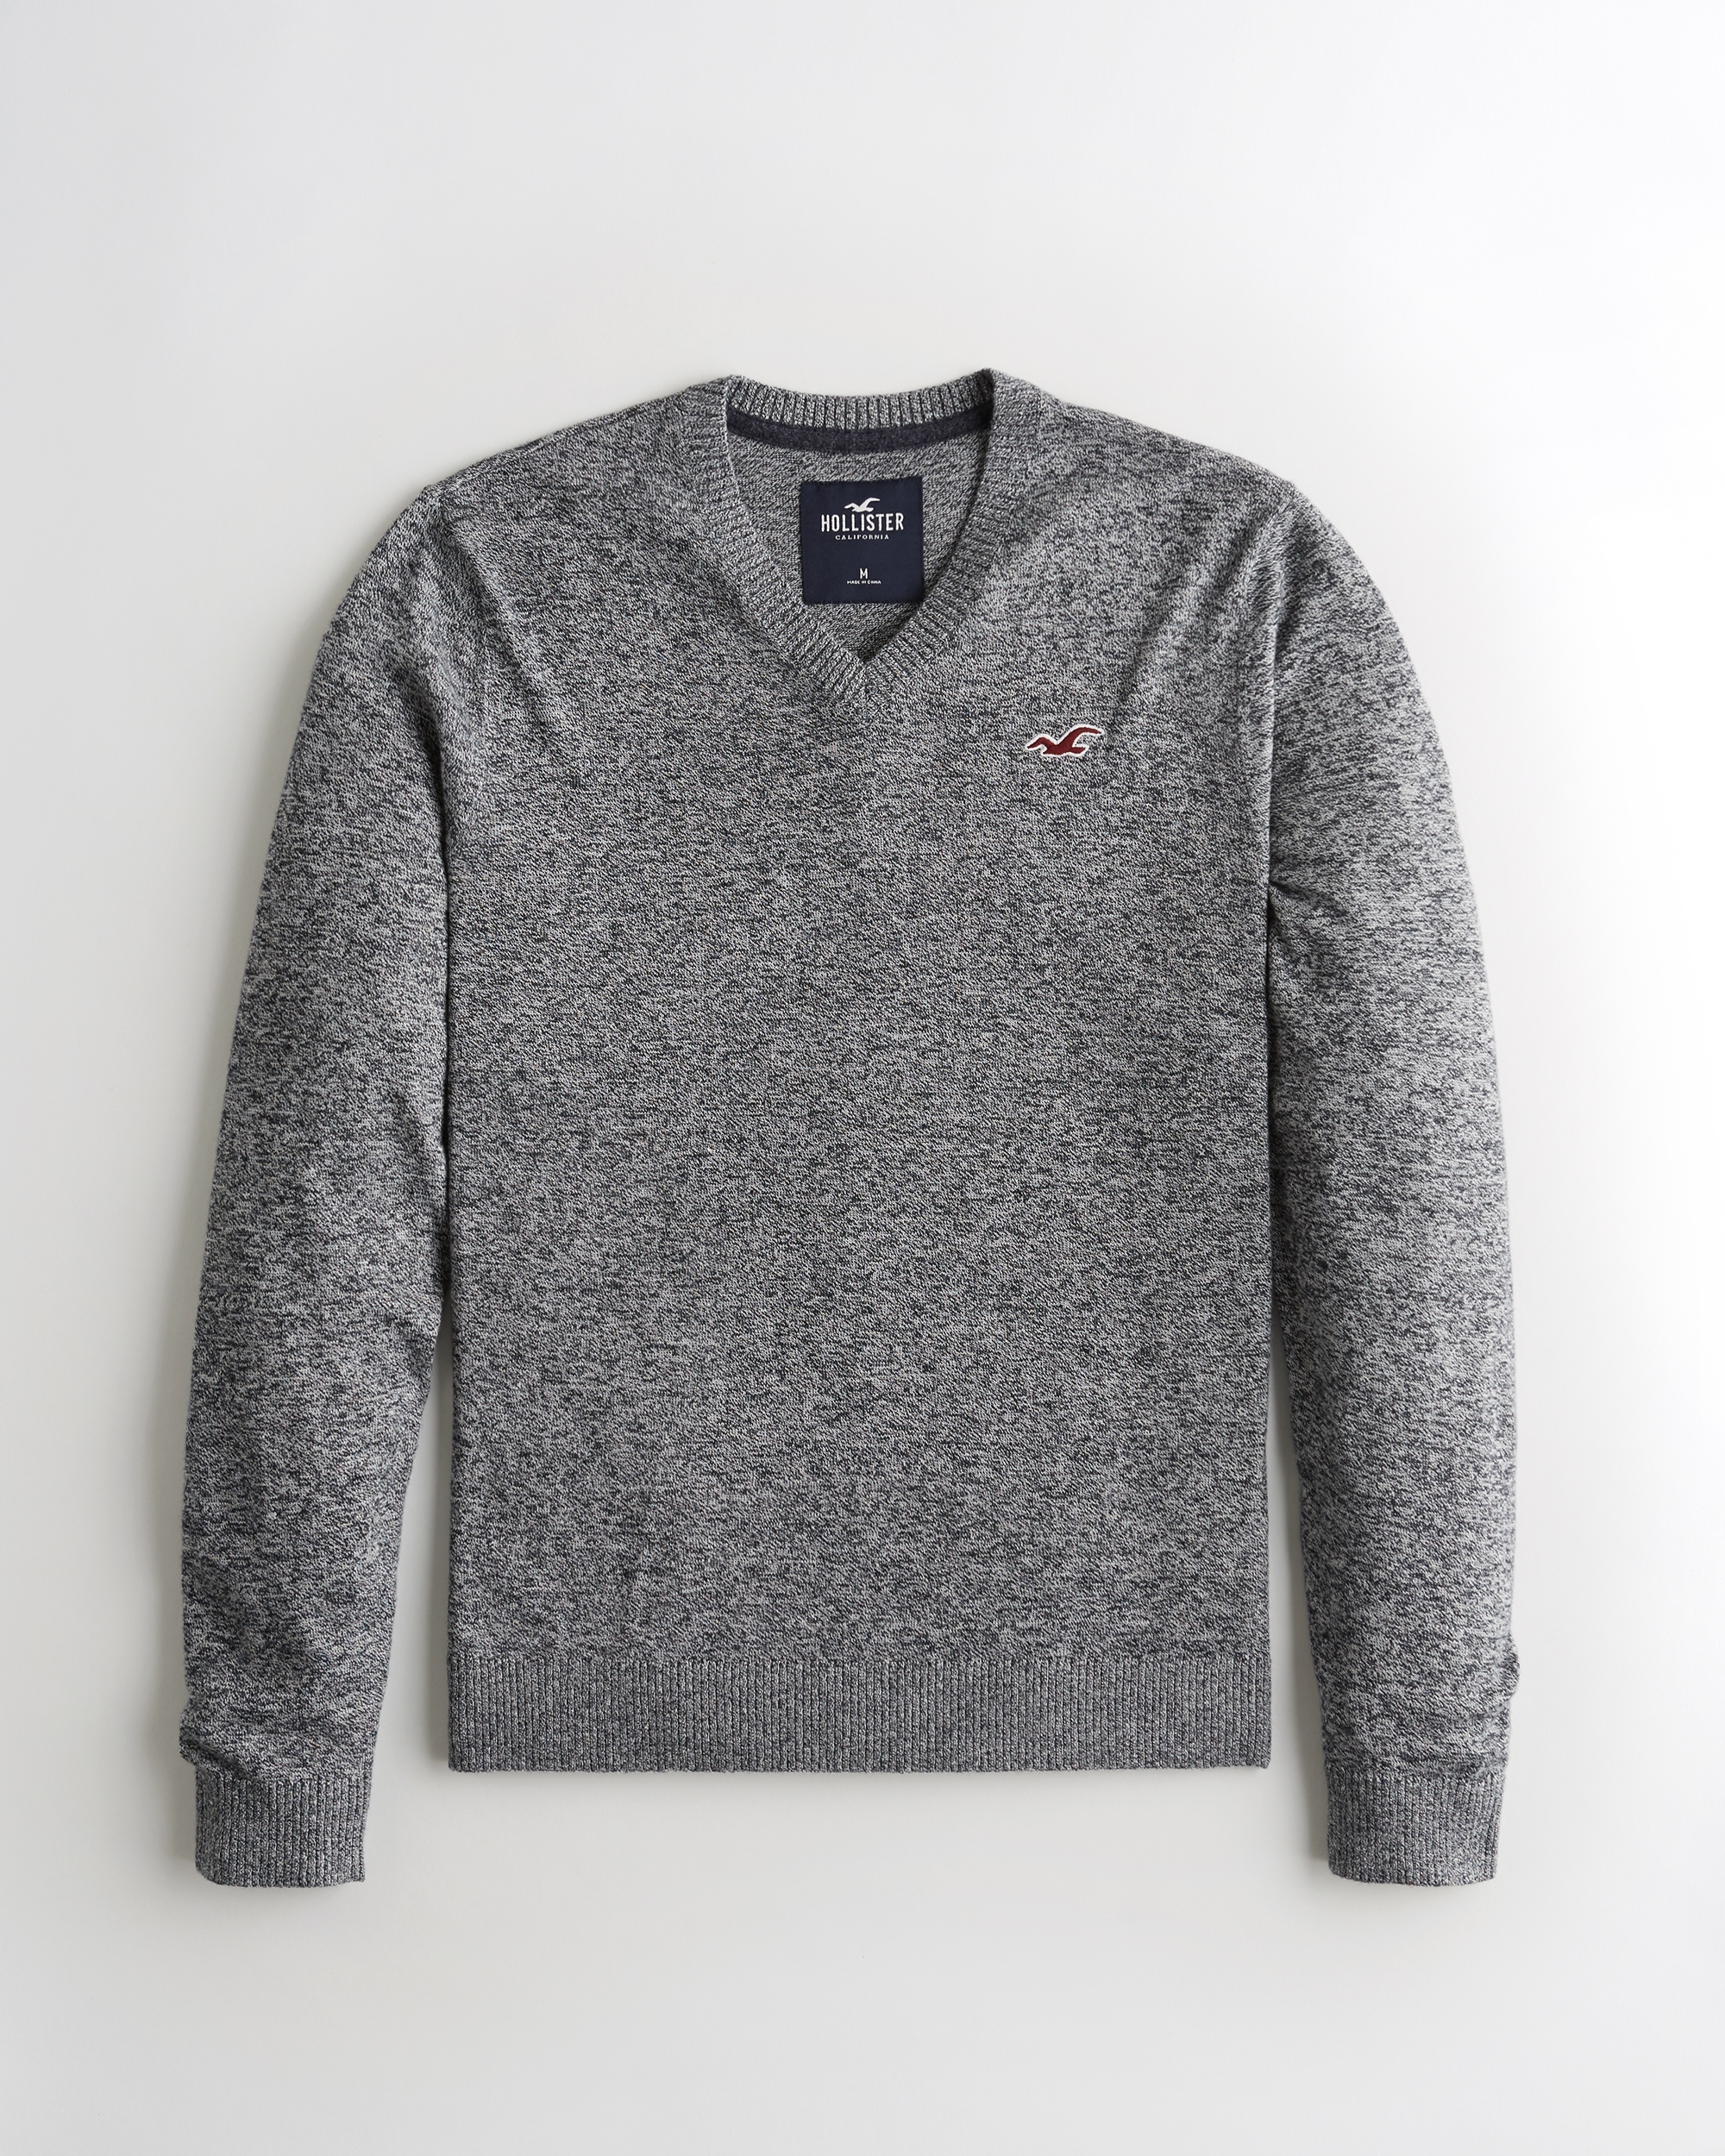 hollister sweater sale